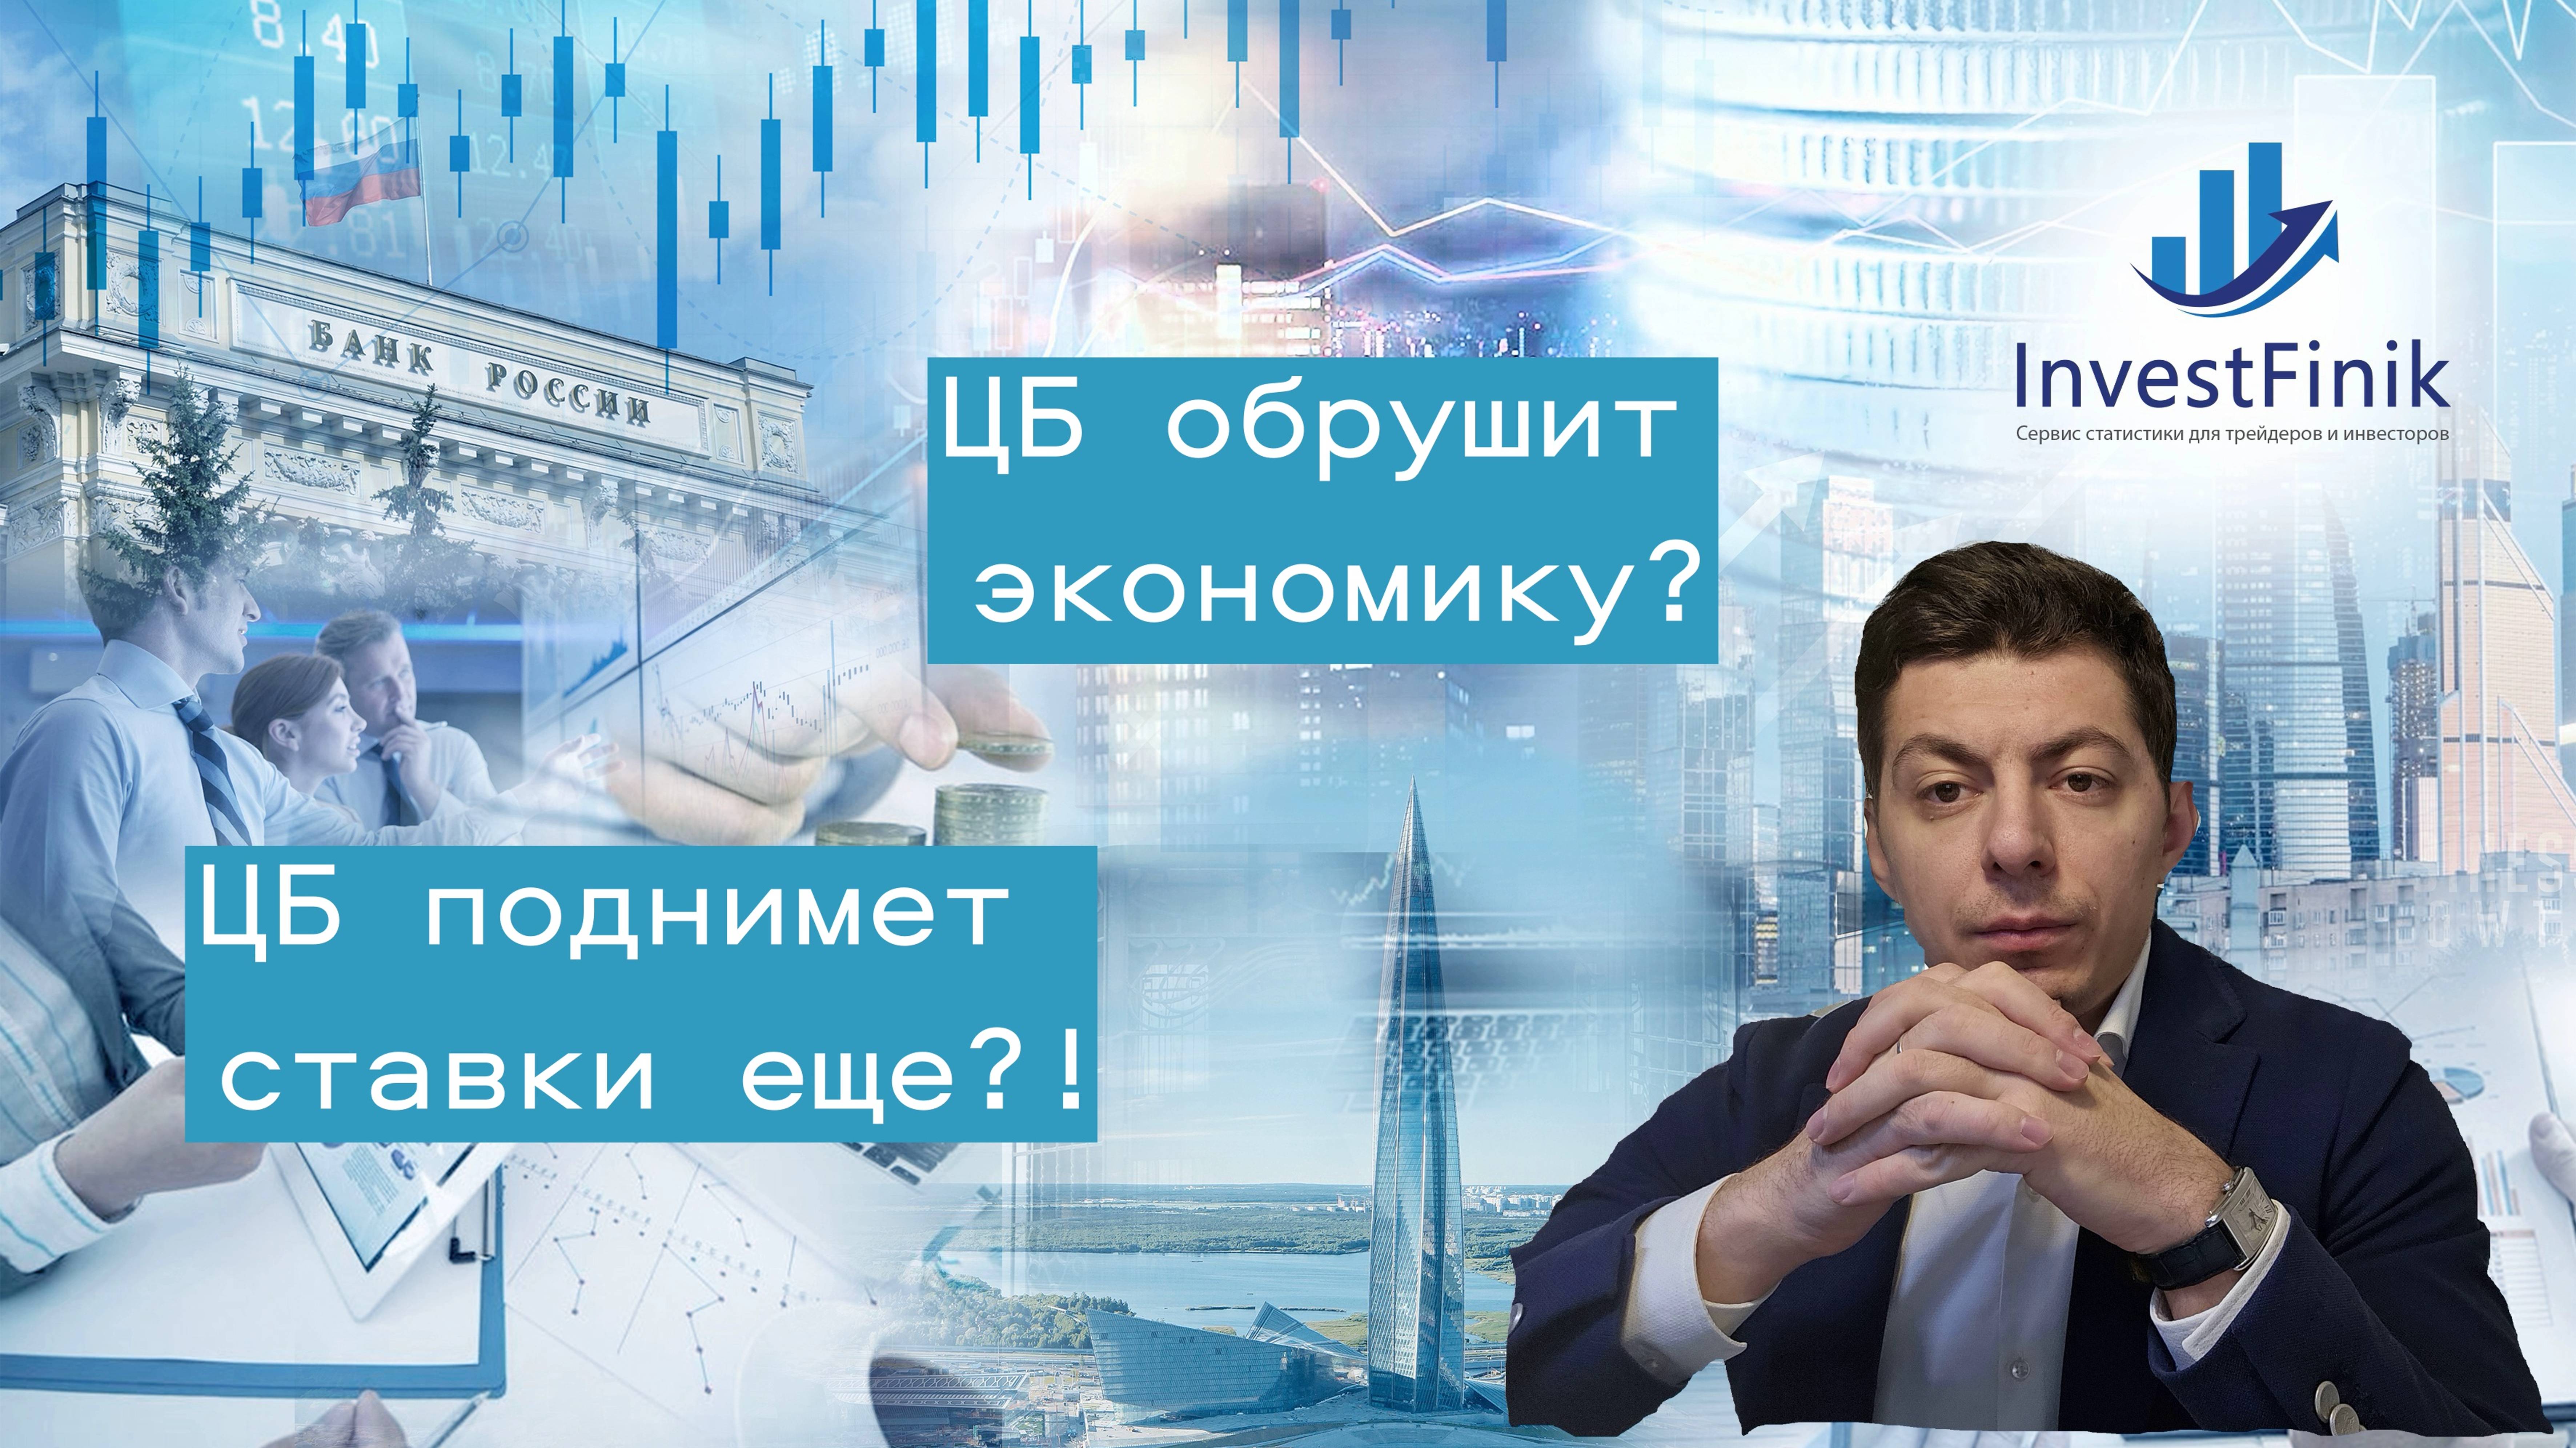 Банк России обрушит экономику? ЦБ собирается поднимать ставки еще?!